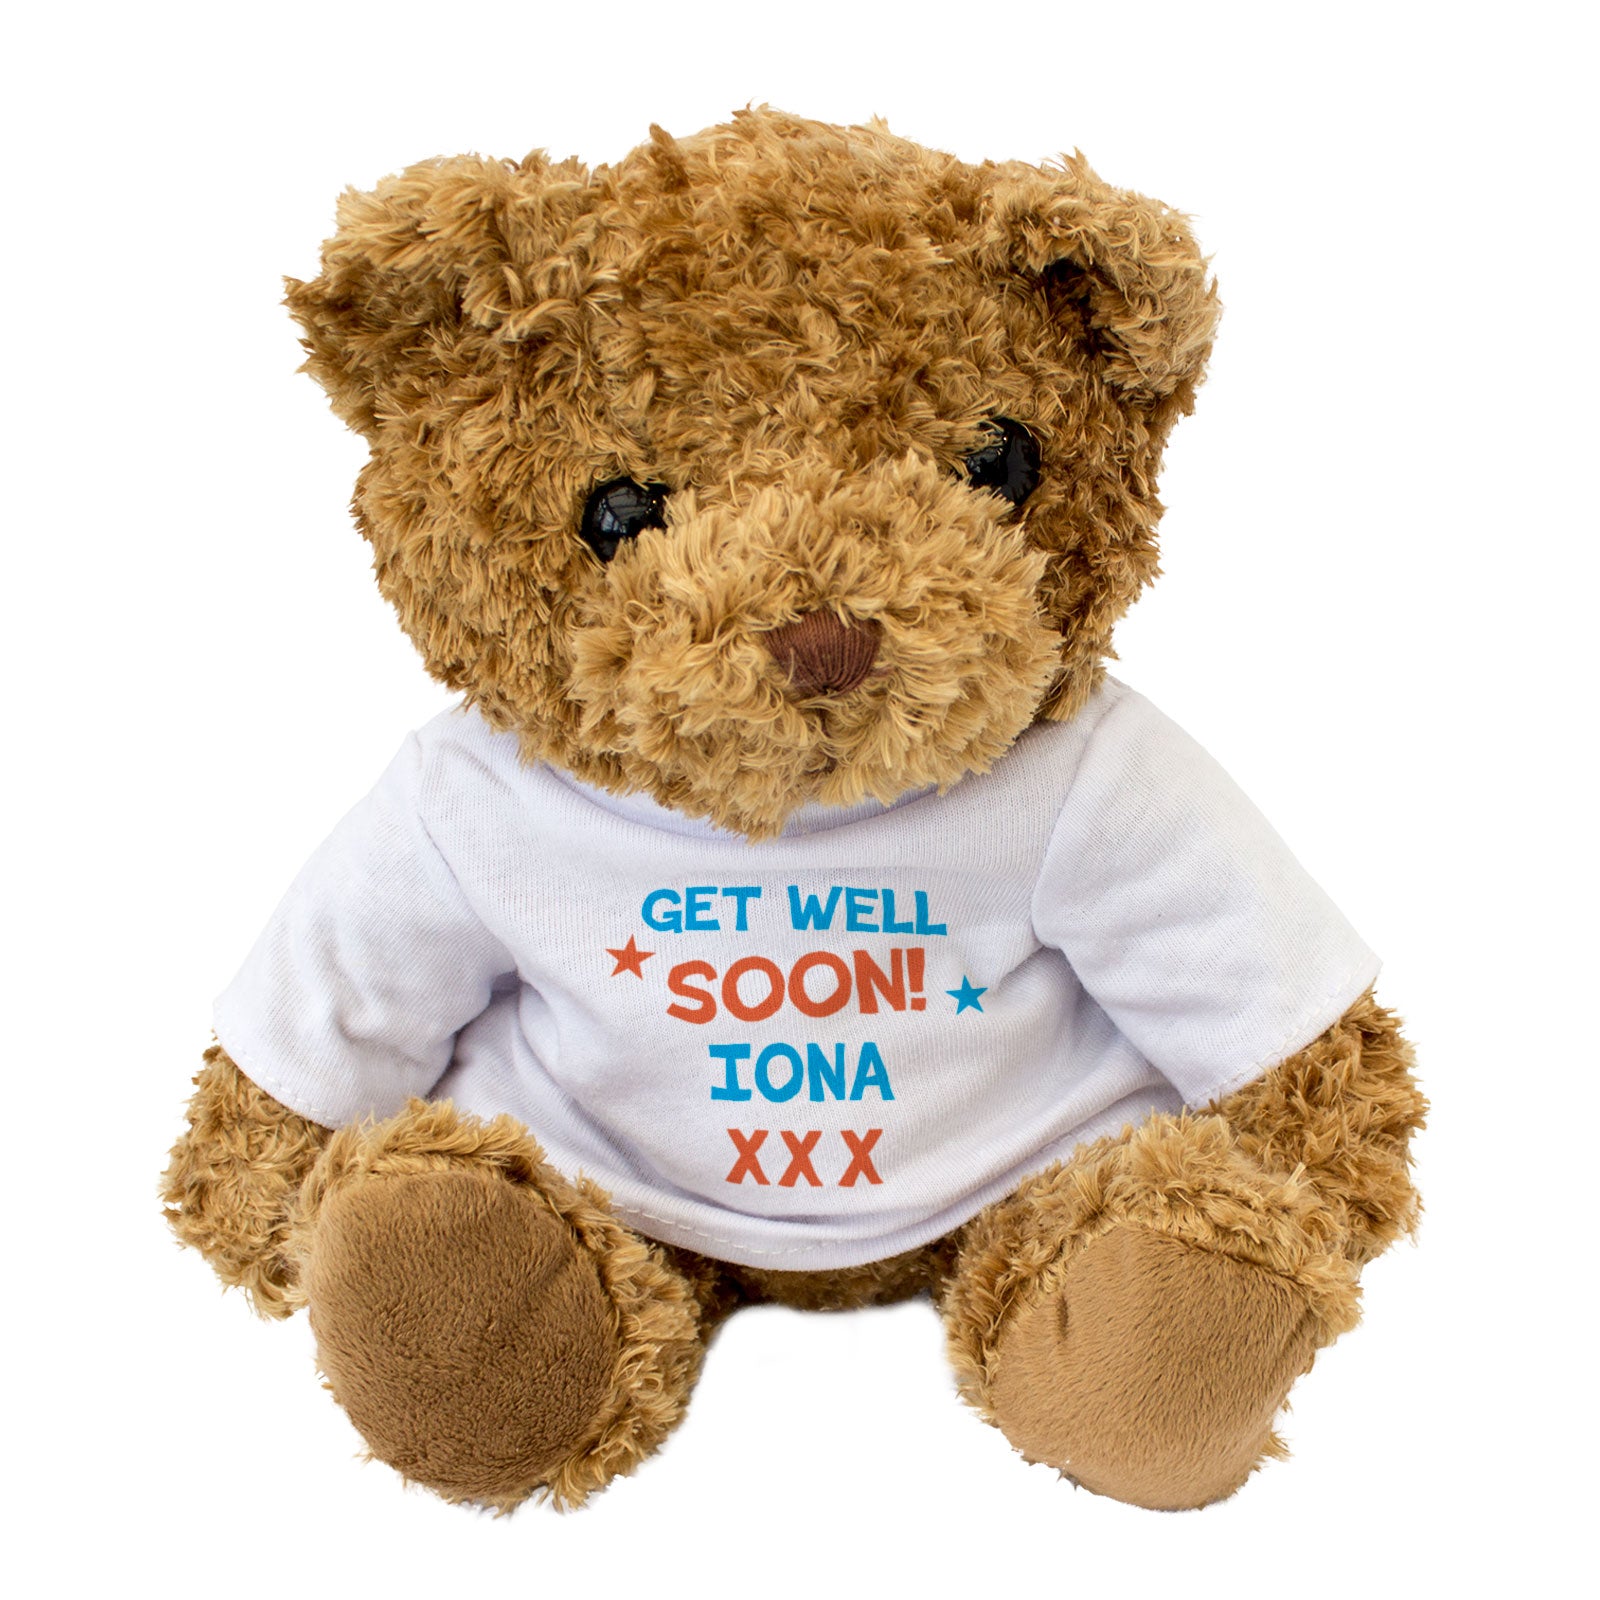 Get Well Soon Iona - Teddy Bear